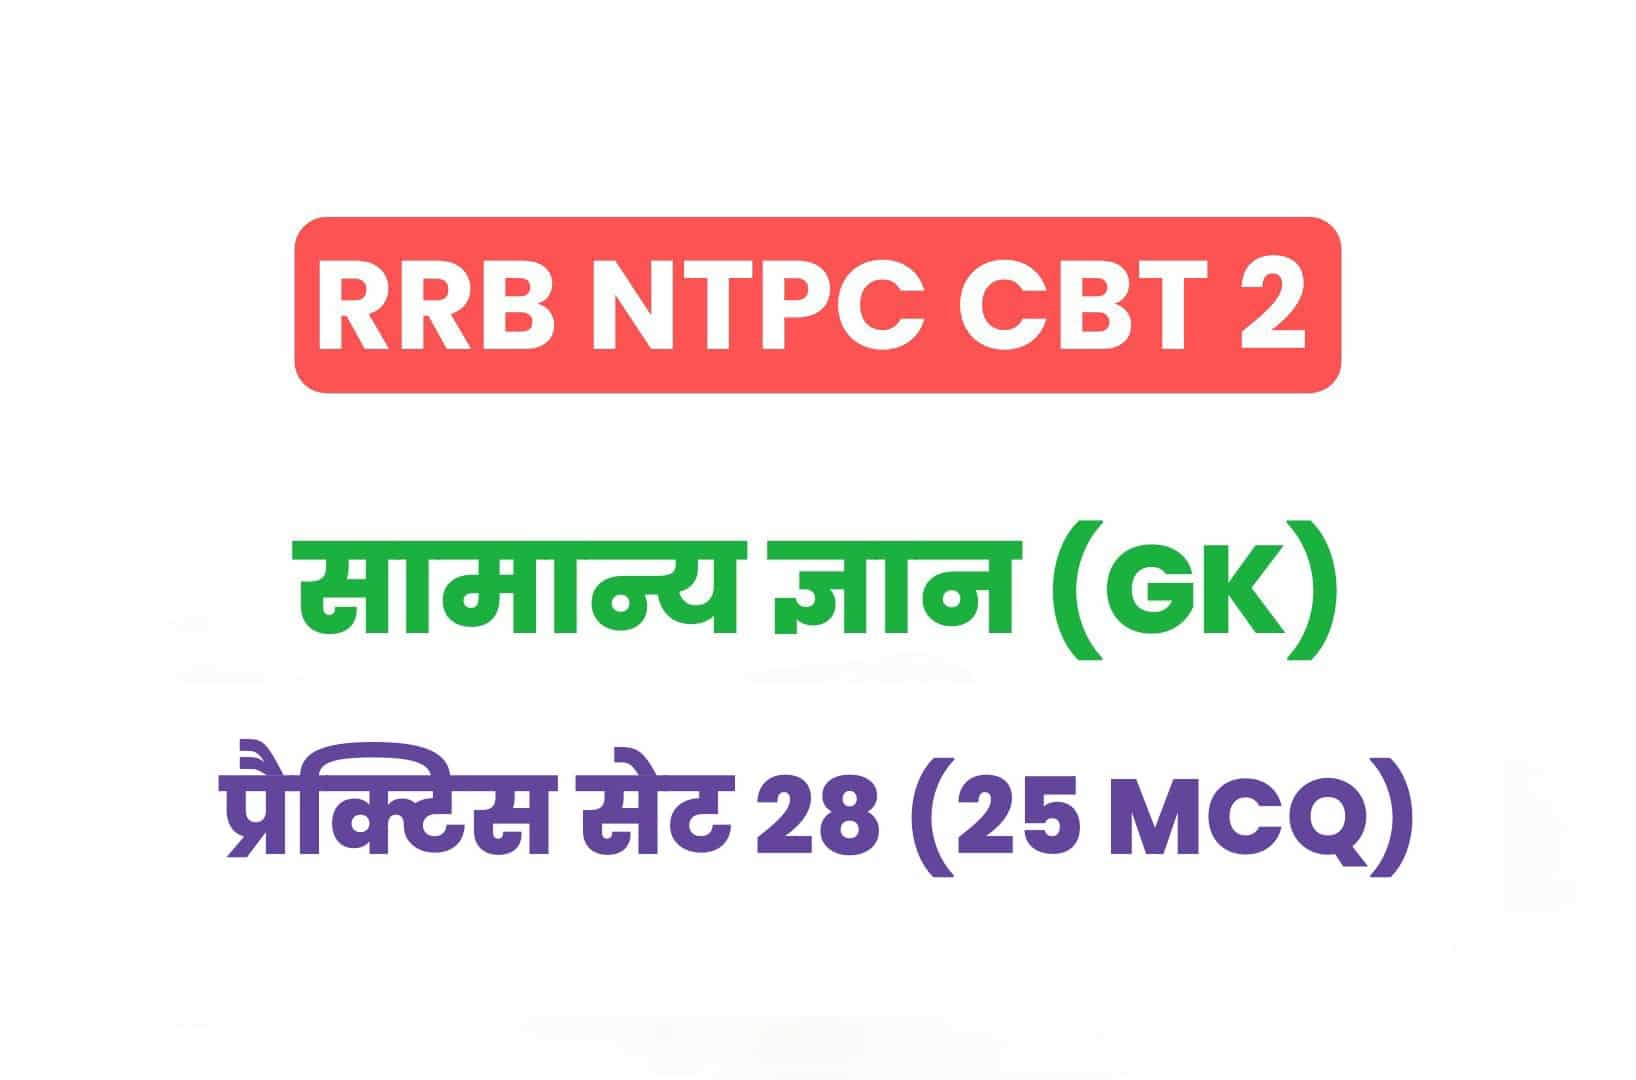 RRB NTPC CBT 2 GK प्रैक्टिस सेट 28: सामान्य ज्ञान के महत्वपूर्ण प्रश्नों का संग्रह, जरूर पढ़ें